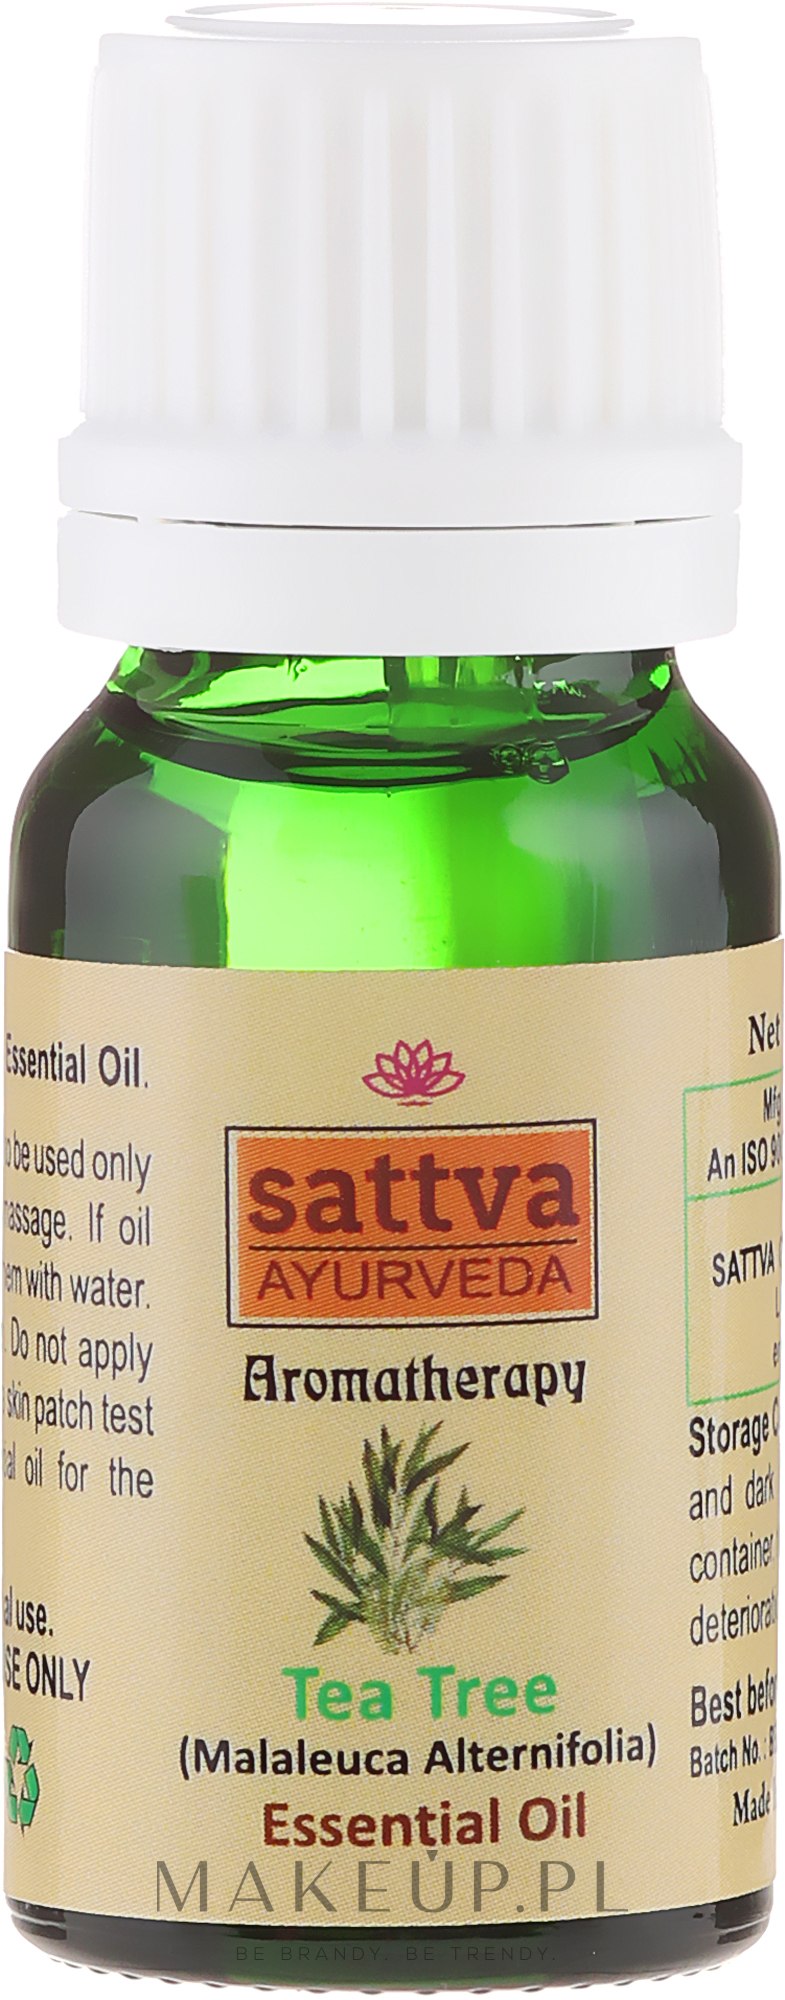 Olejek z drzewa herbacianego - Sattva Ayurveda Aromatherapy Tea Tree Essential Oil — Zdjęcie 10 ml